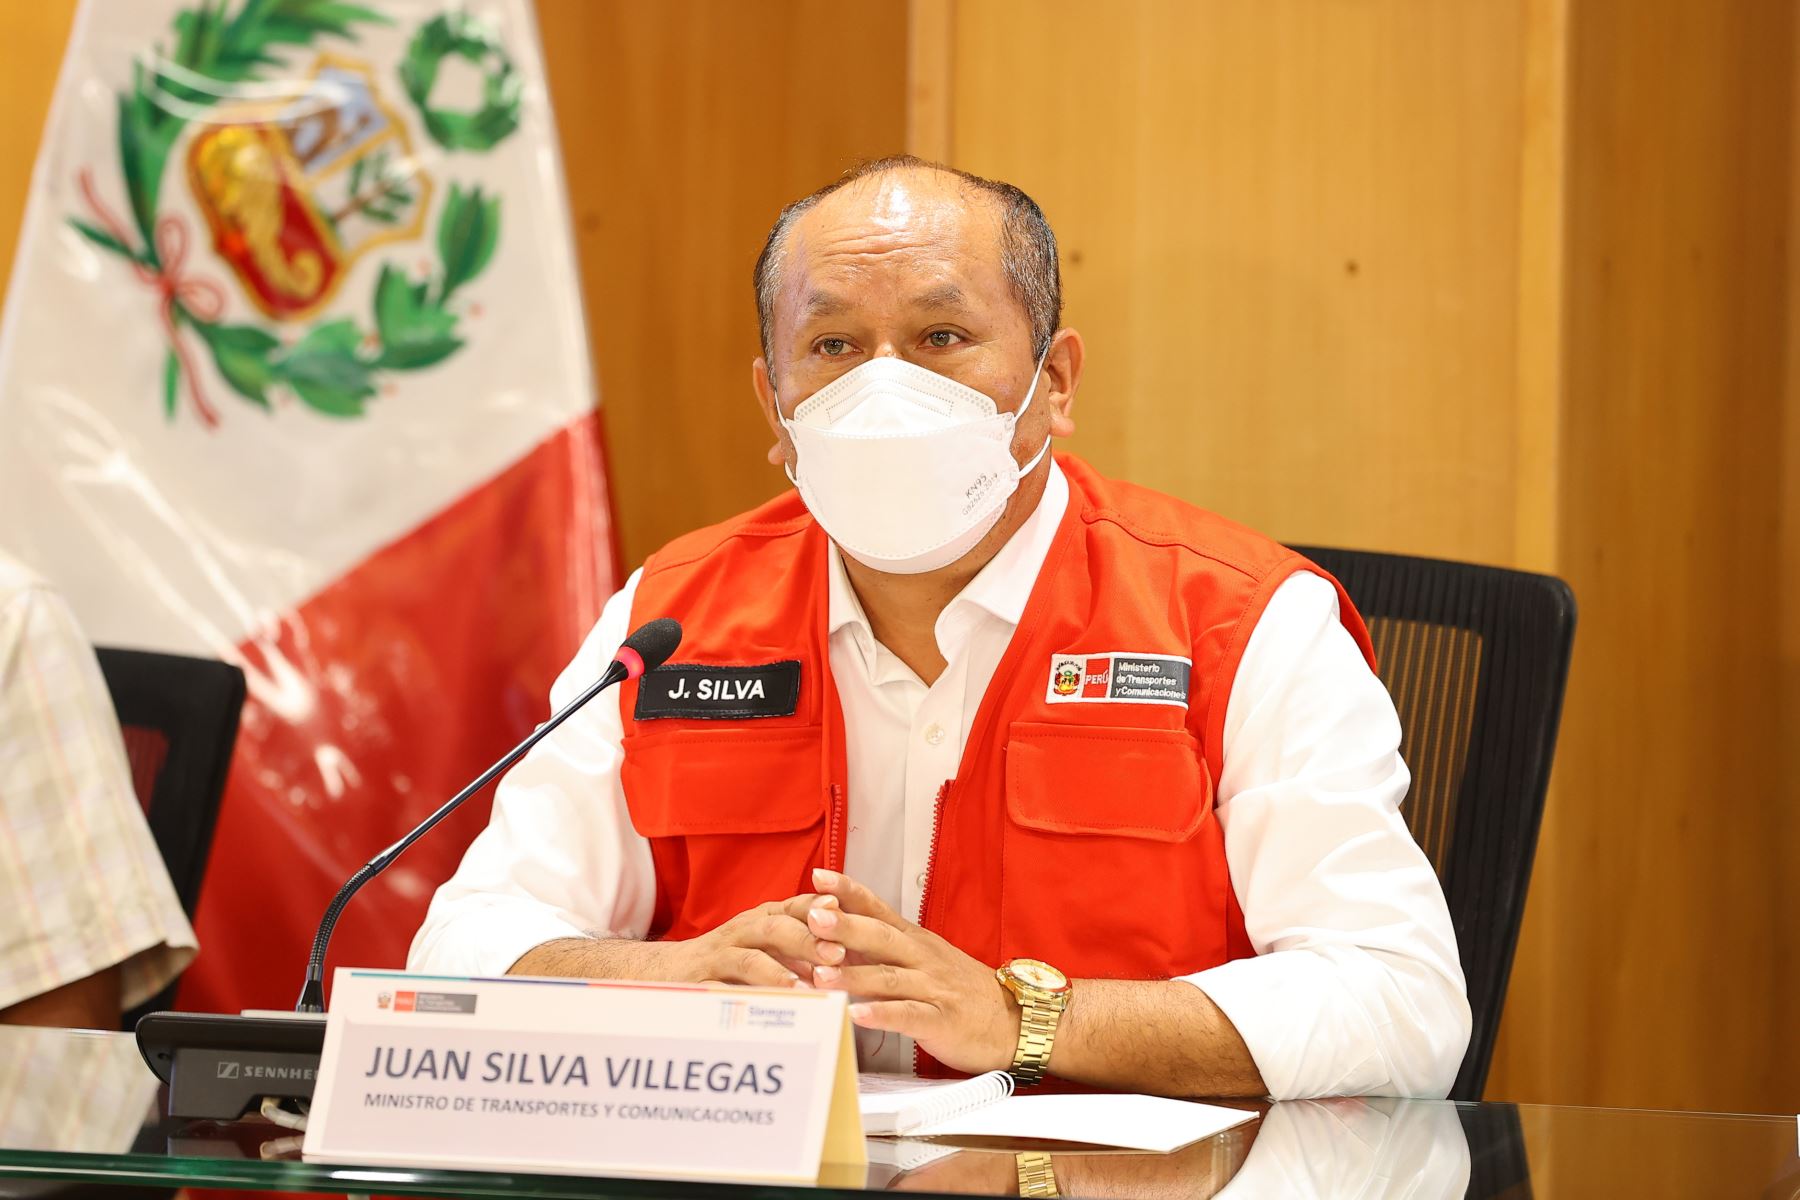 De acuerdo con el ministro del Interior, Juan Silva está siendo buscado en 124 países. Foto: Andina